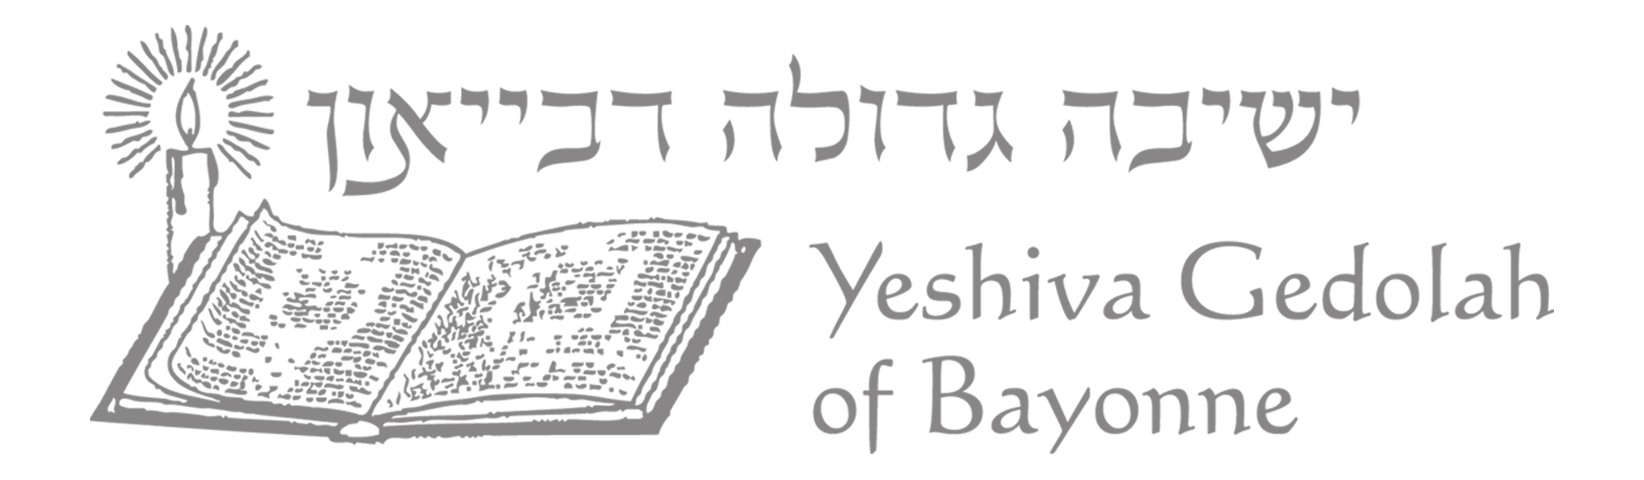 Yeshiva-logo-copy-1